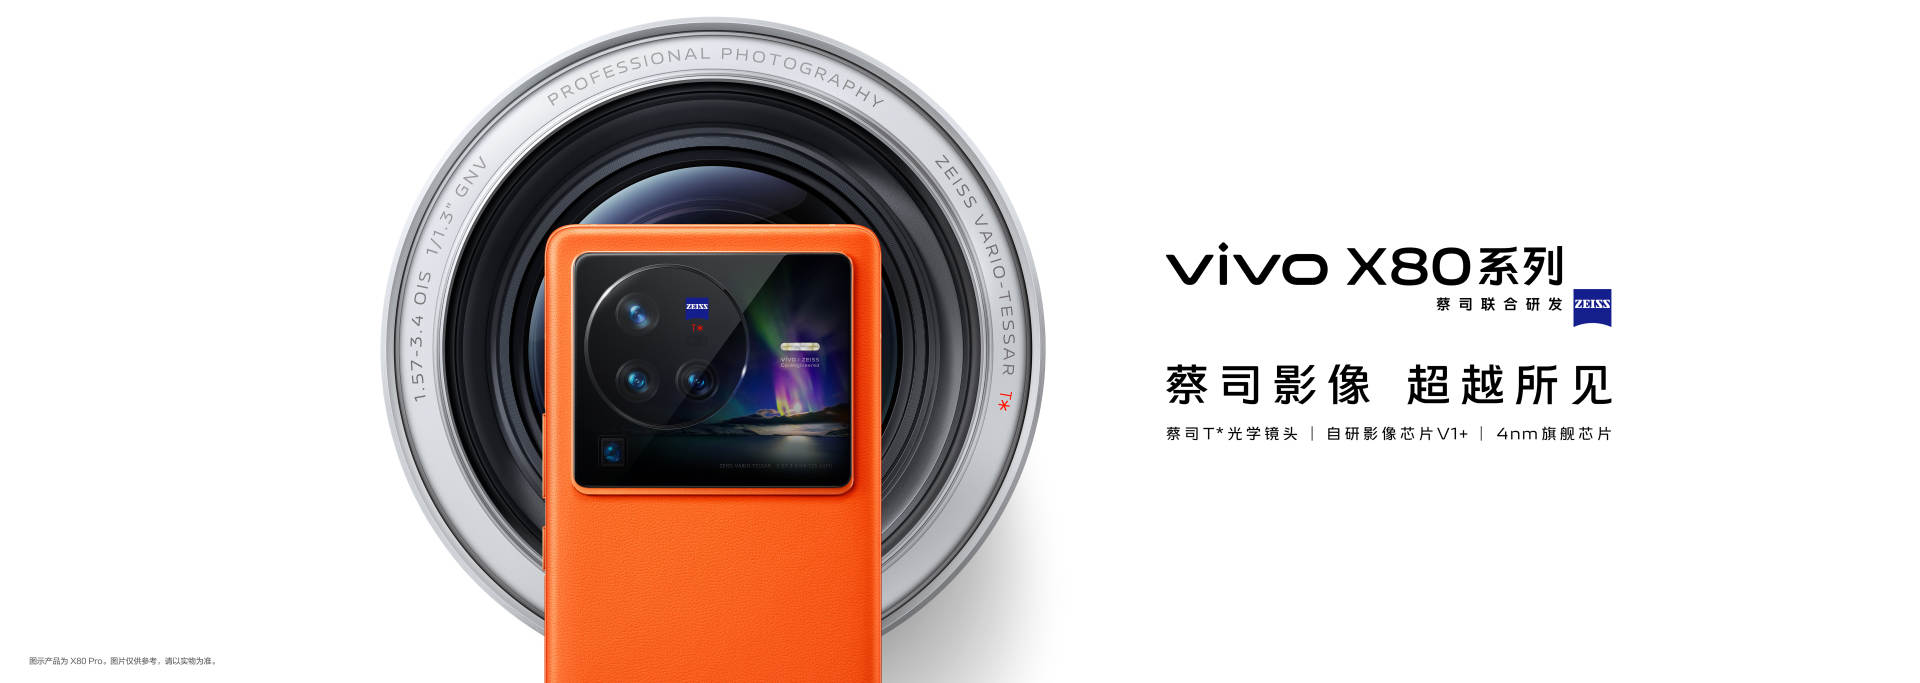 摄影|vivo X80系列打造人像摄影大师 三大技术全面领先